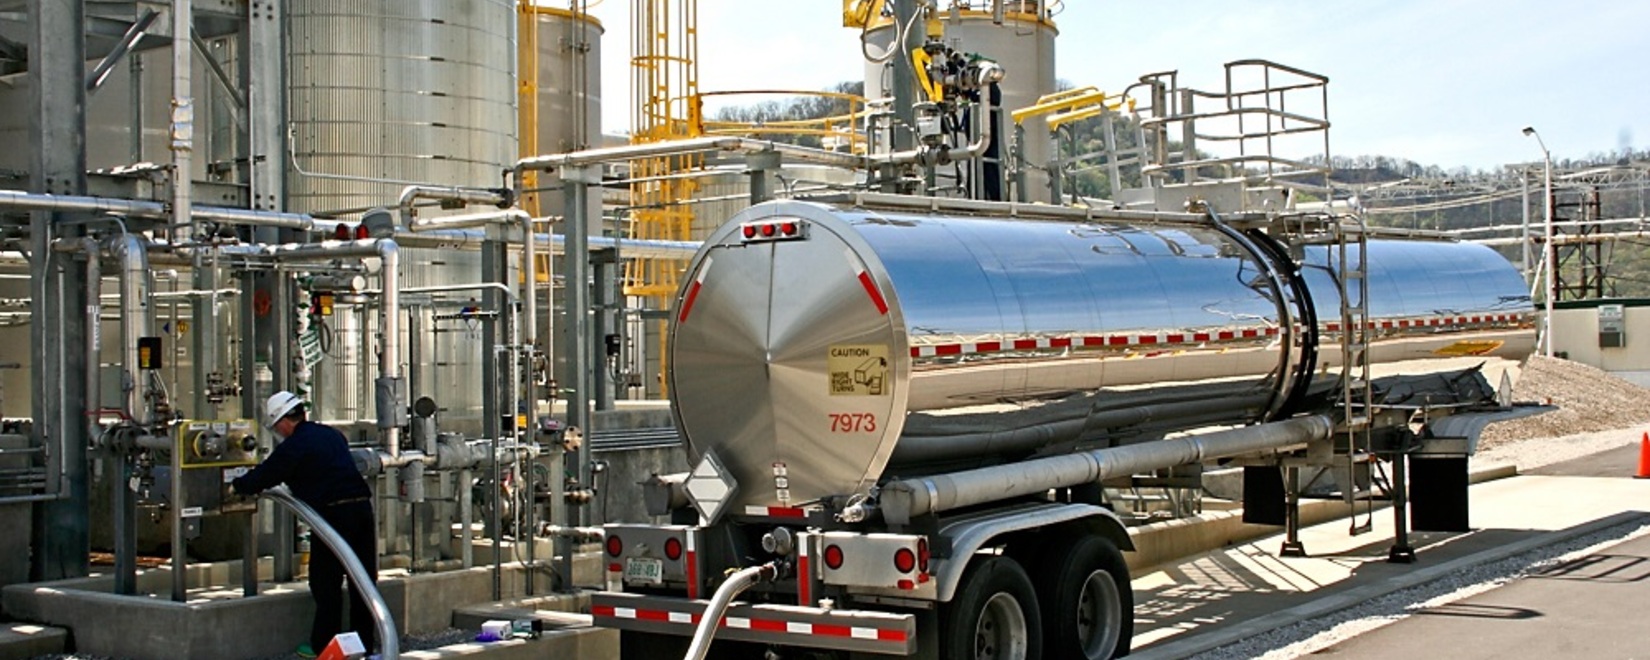 ФАС призывает нефтяные компании увеличить поставки топлива на внутренний рынок